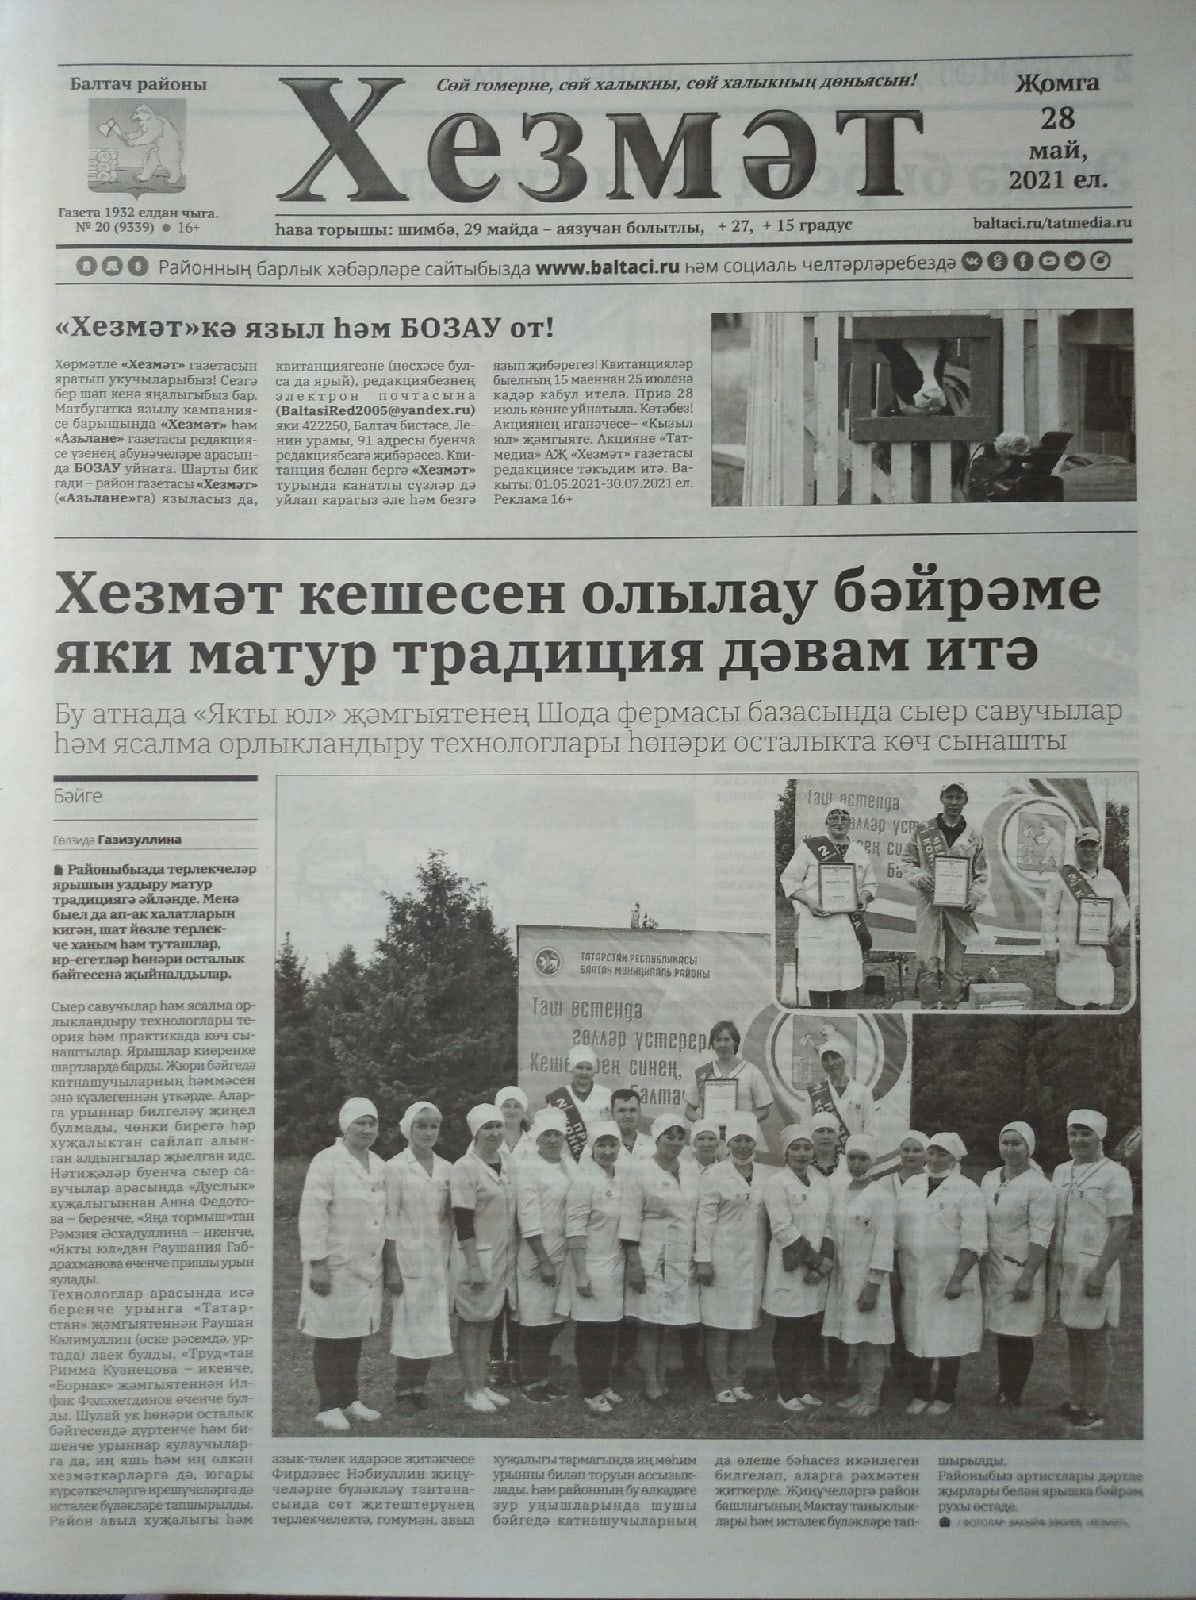 Газетаның 20нче санында (28 май, 2021 ел) чыгарылган белдерүләр һәм рекламалар